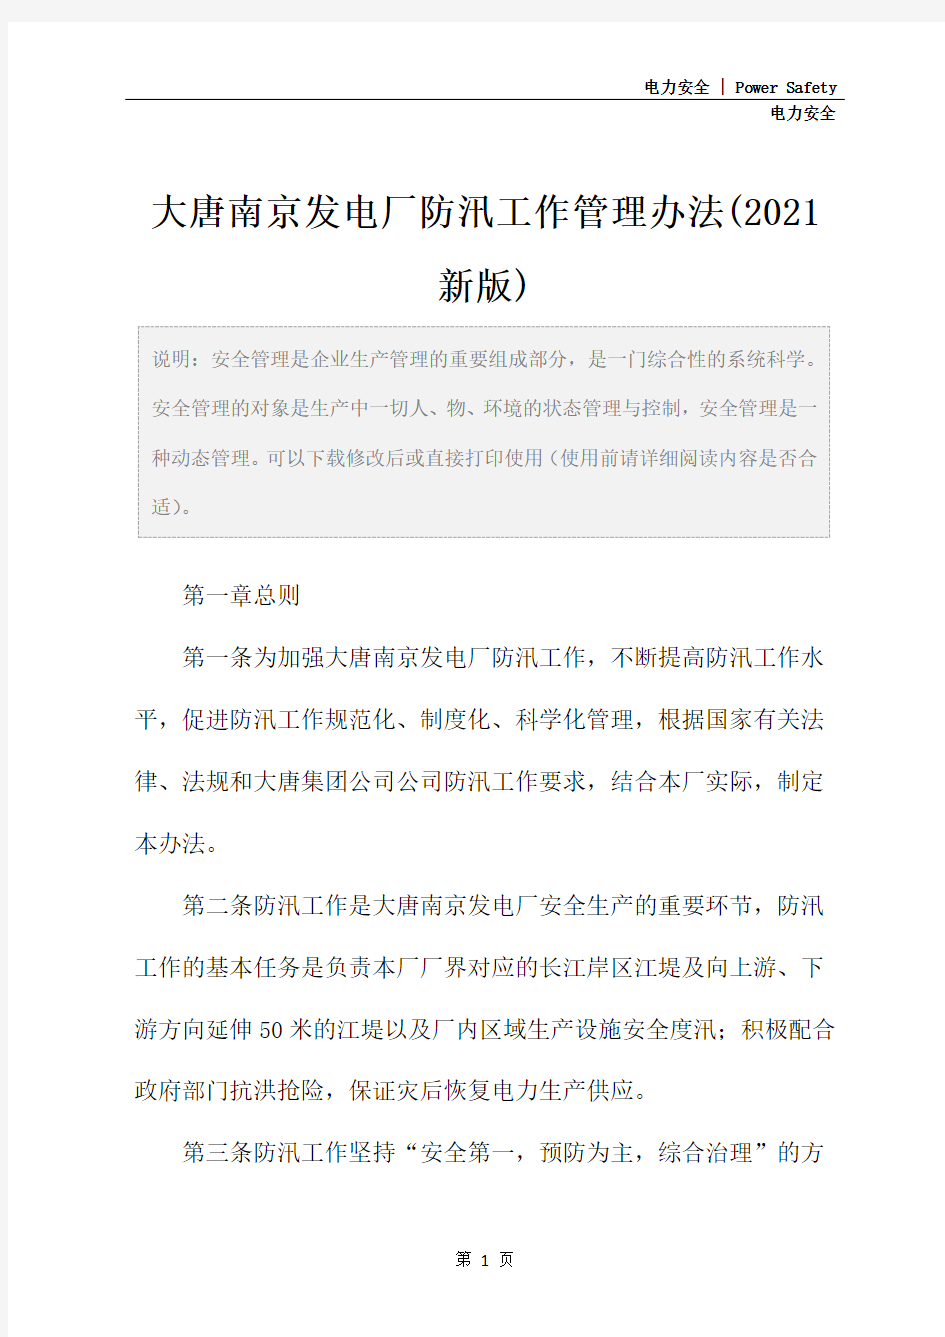 大唐南京发电厂防汛工作管理办法(2021新版)